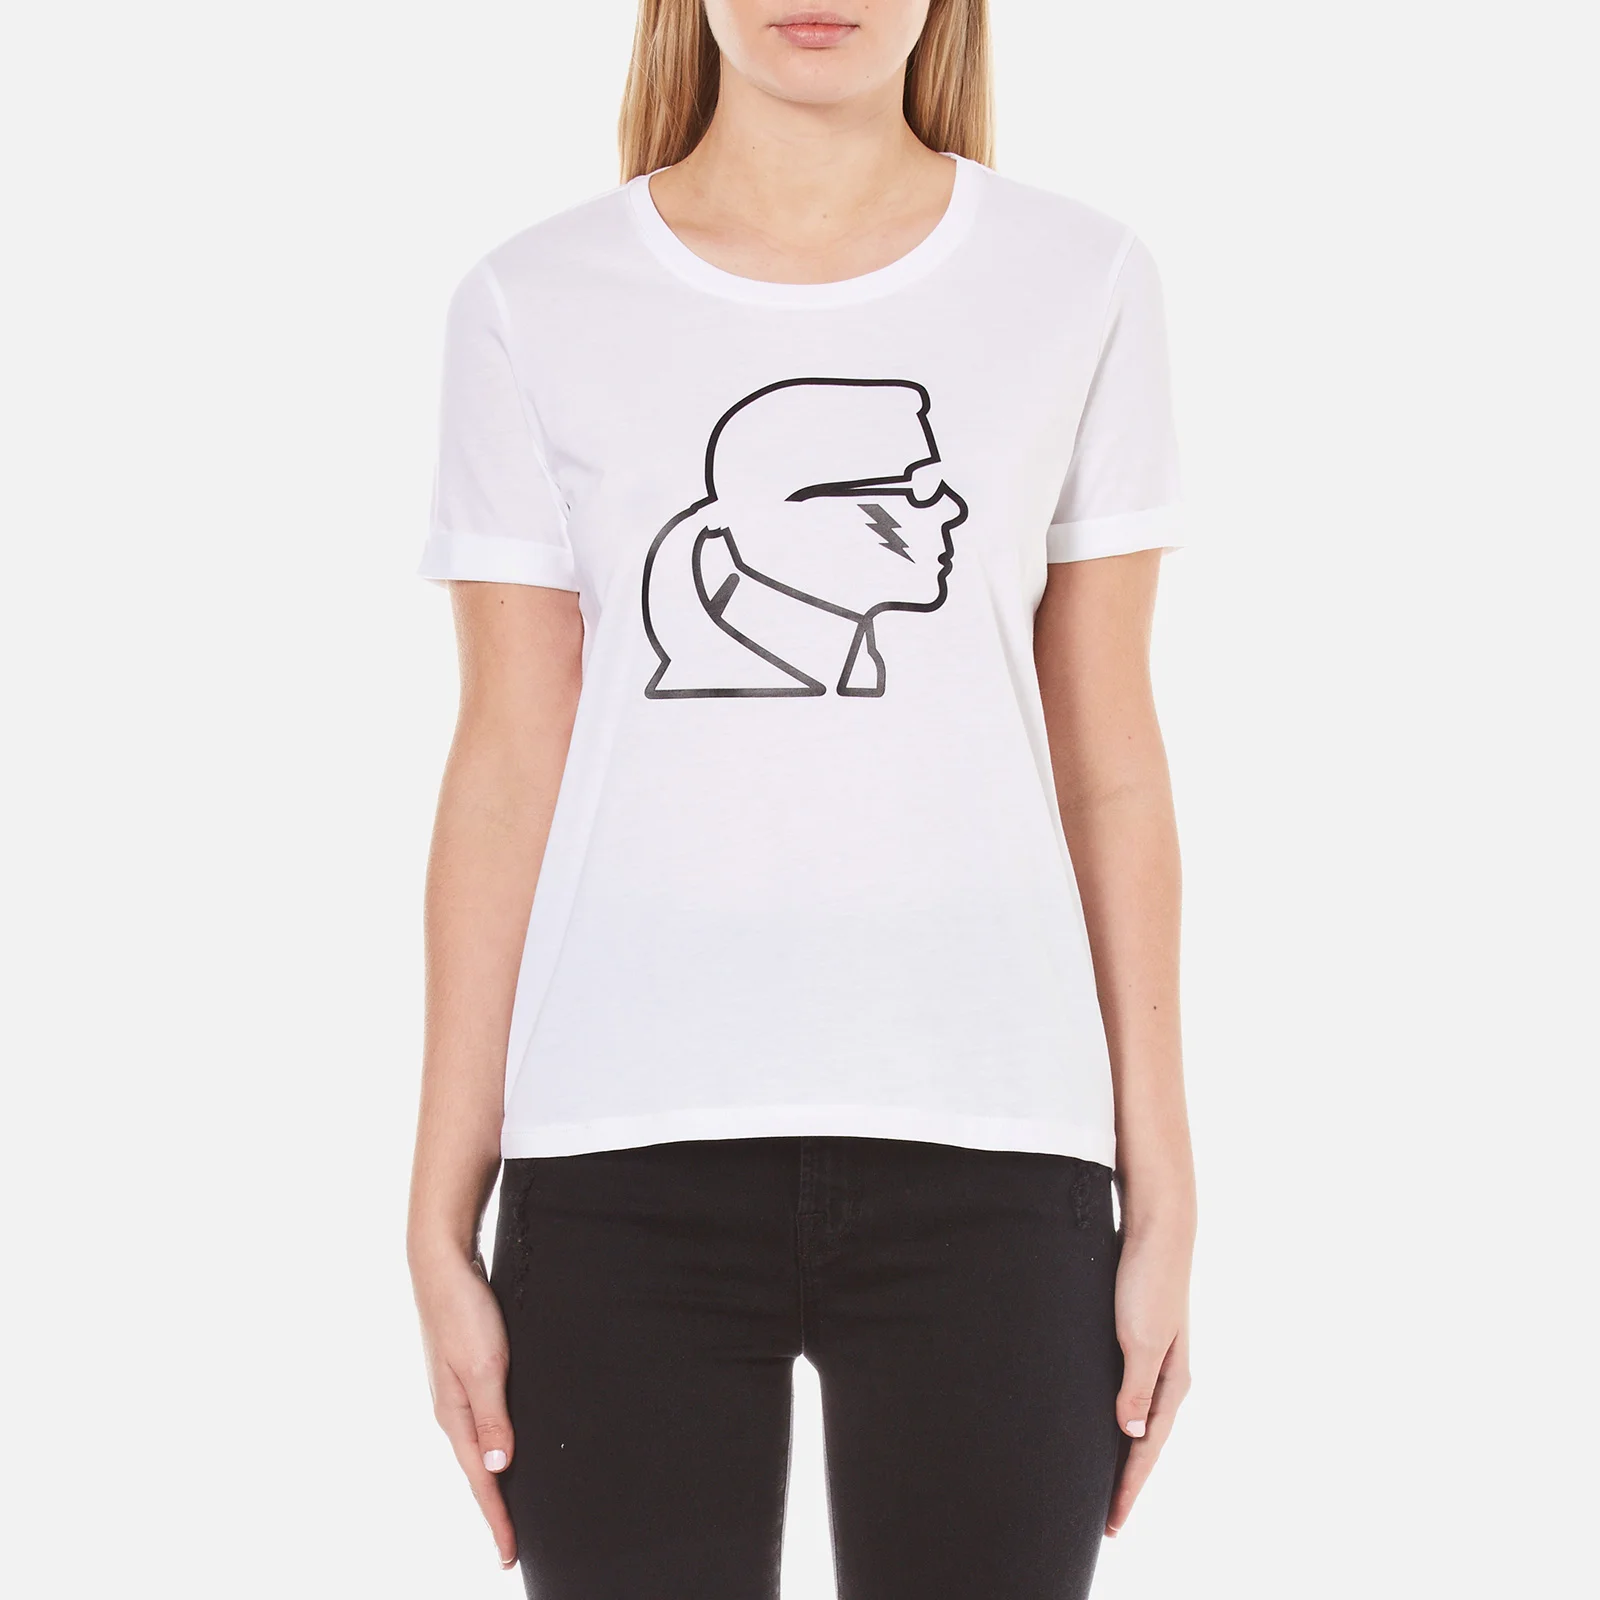 Karl Lagerfeld Women's Karl Lightning Bolt T-Shirt - White Image 1